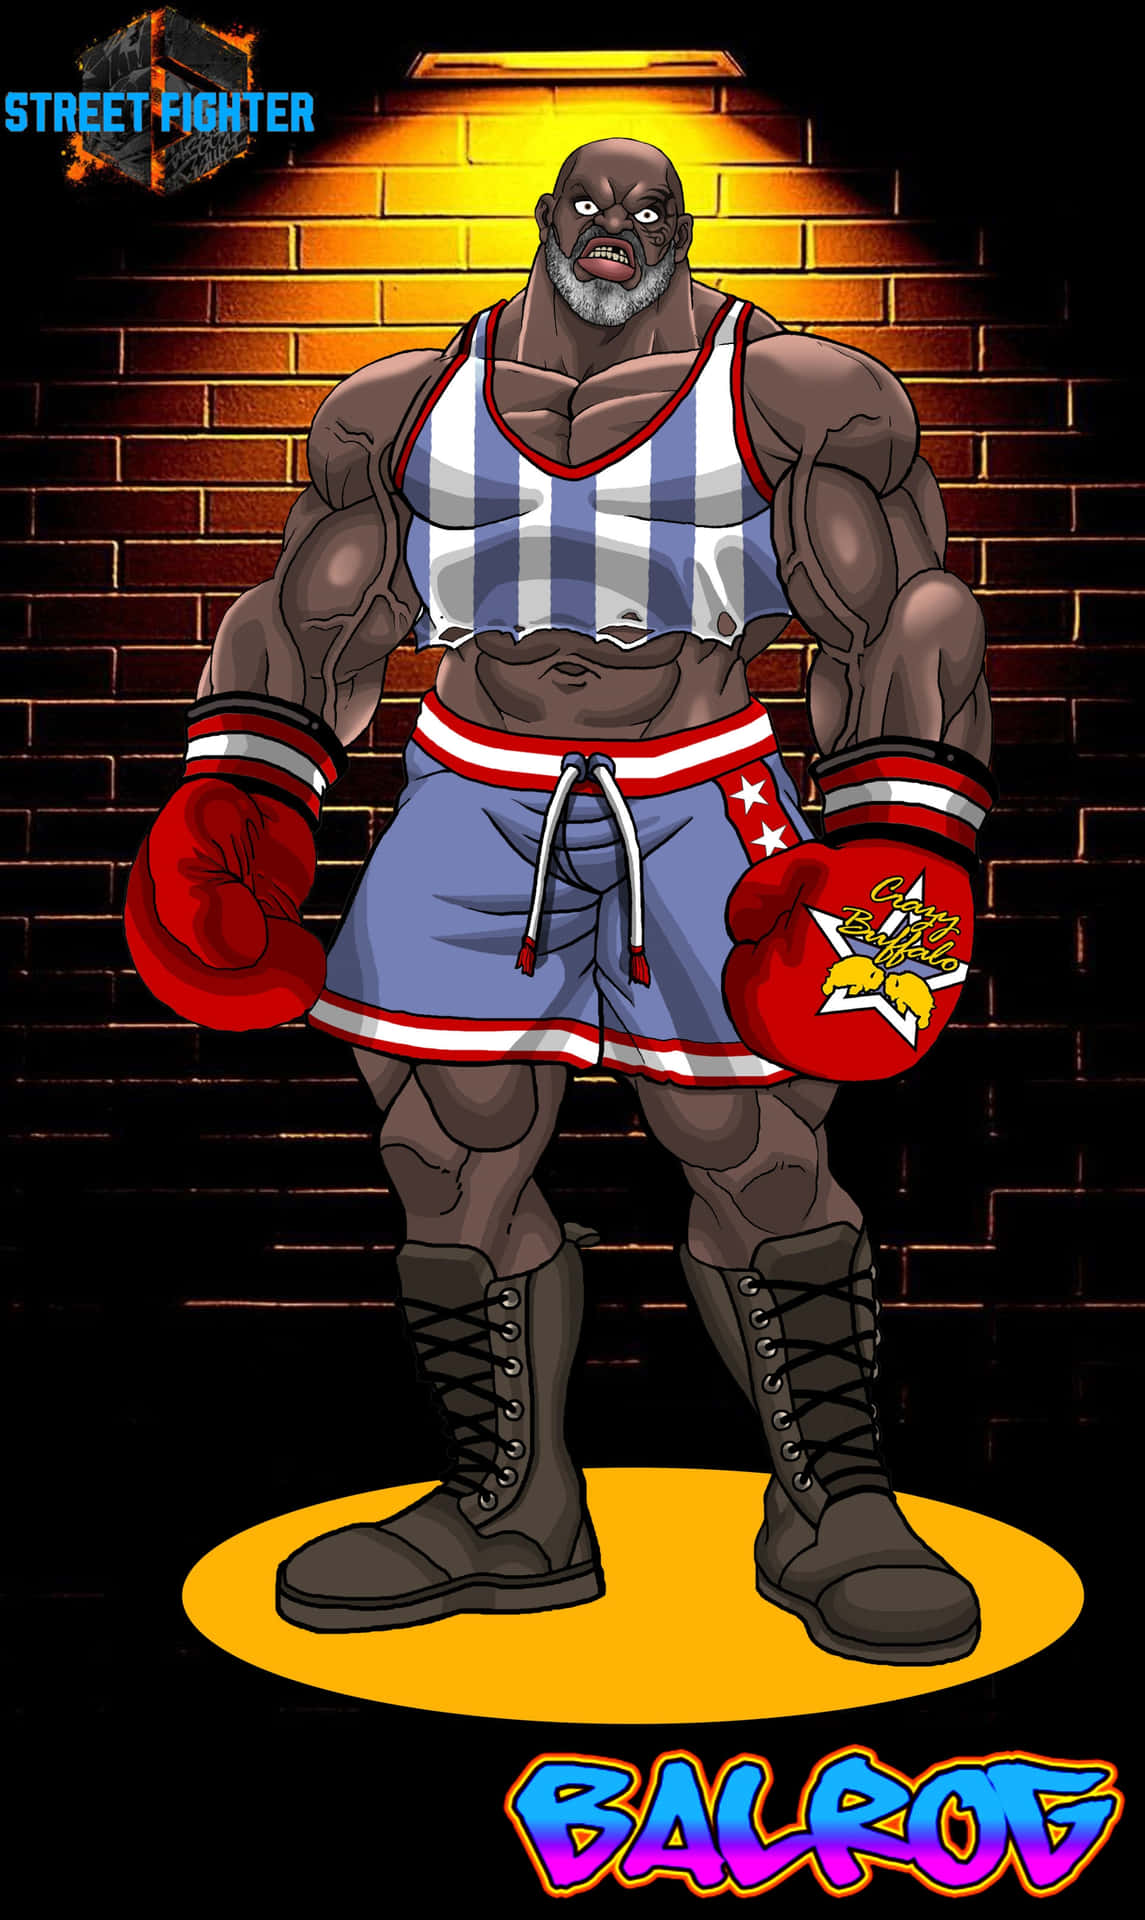 Street Fighter Balrog Illustration Wallpaper